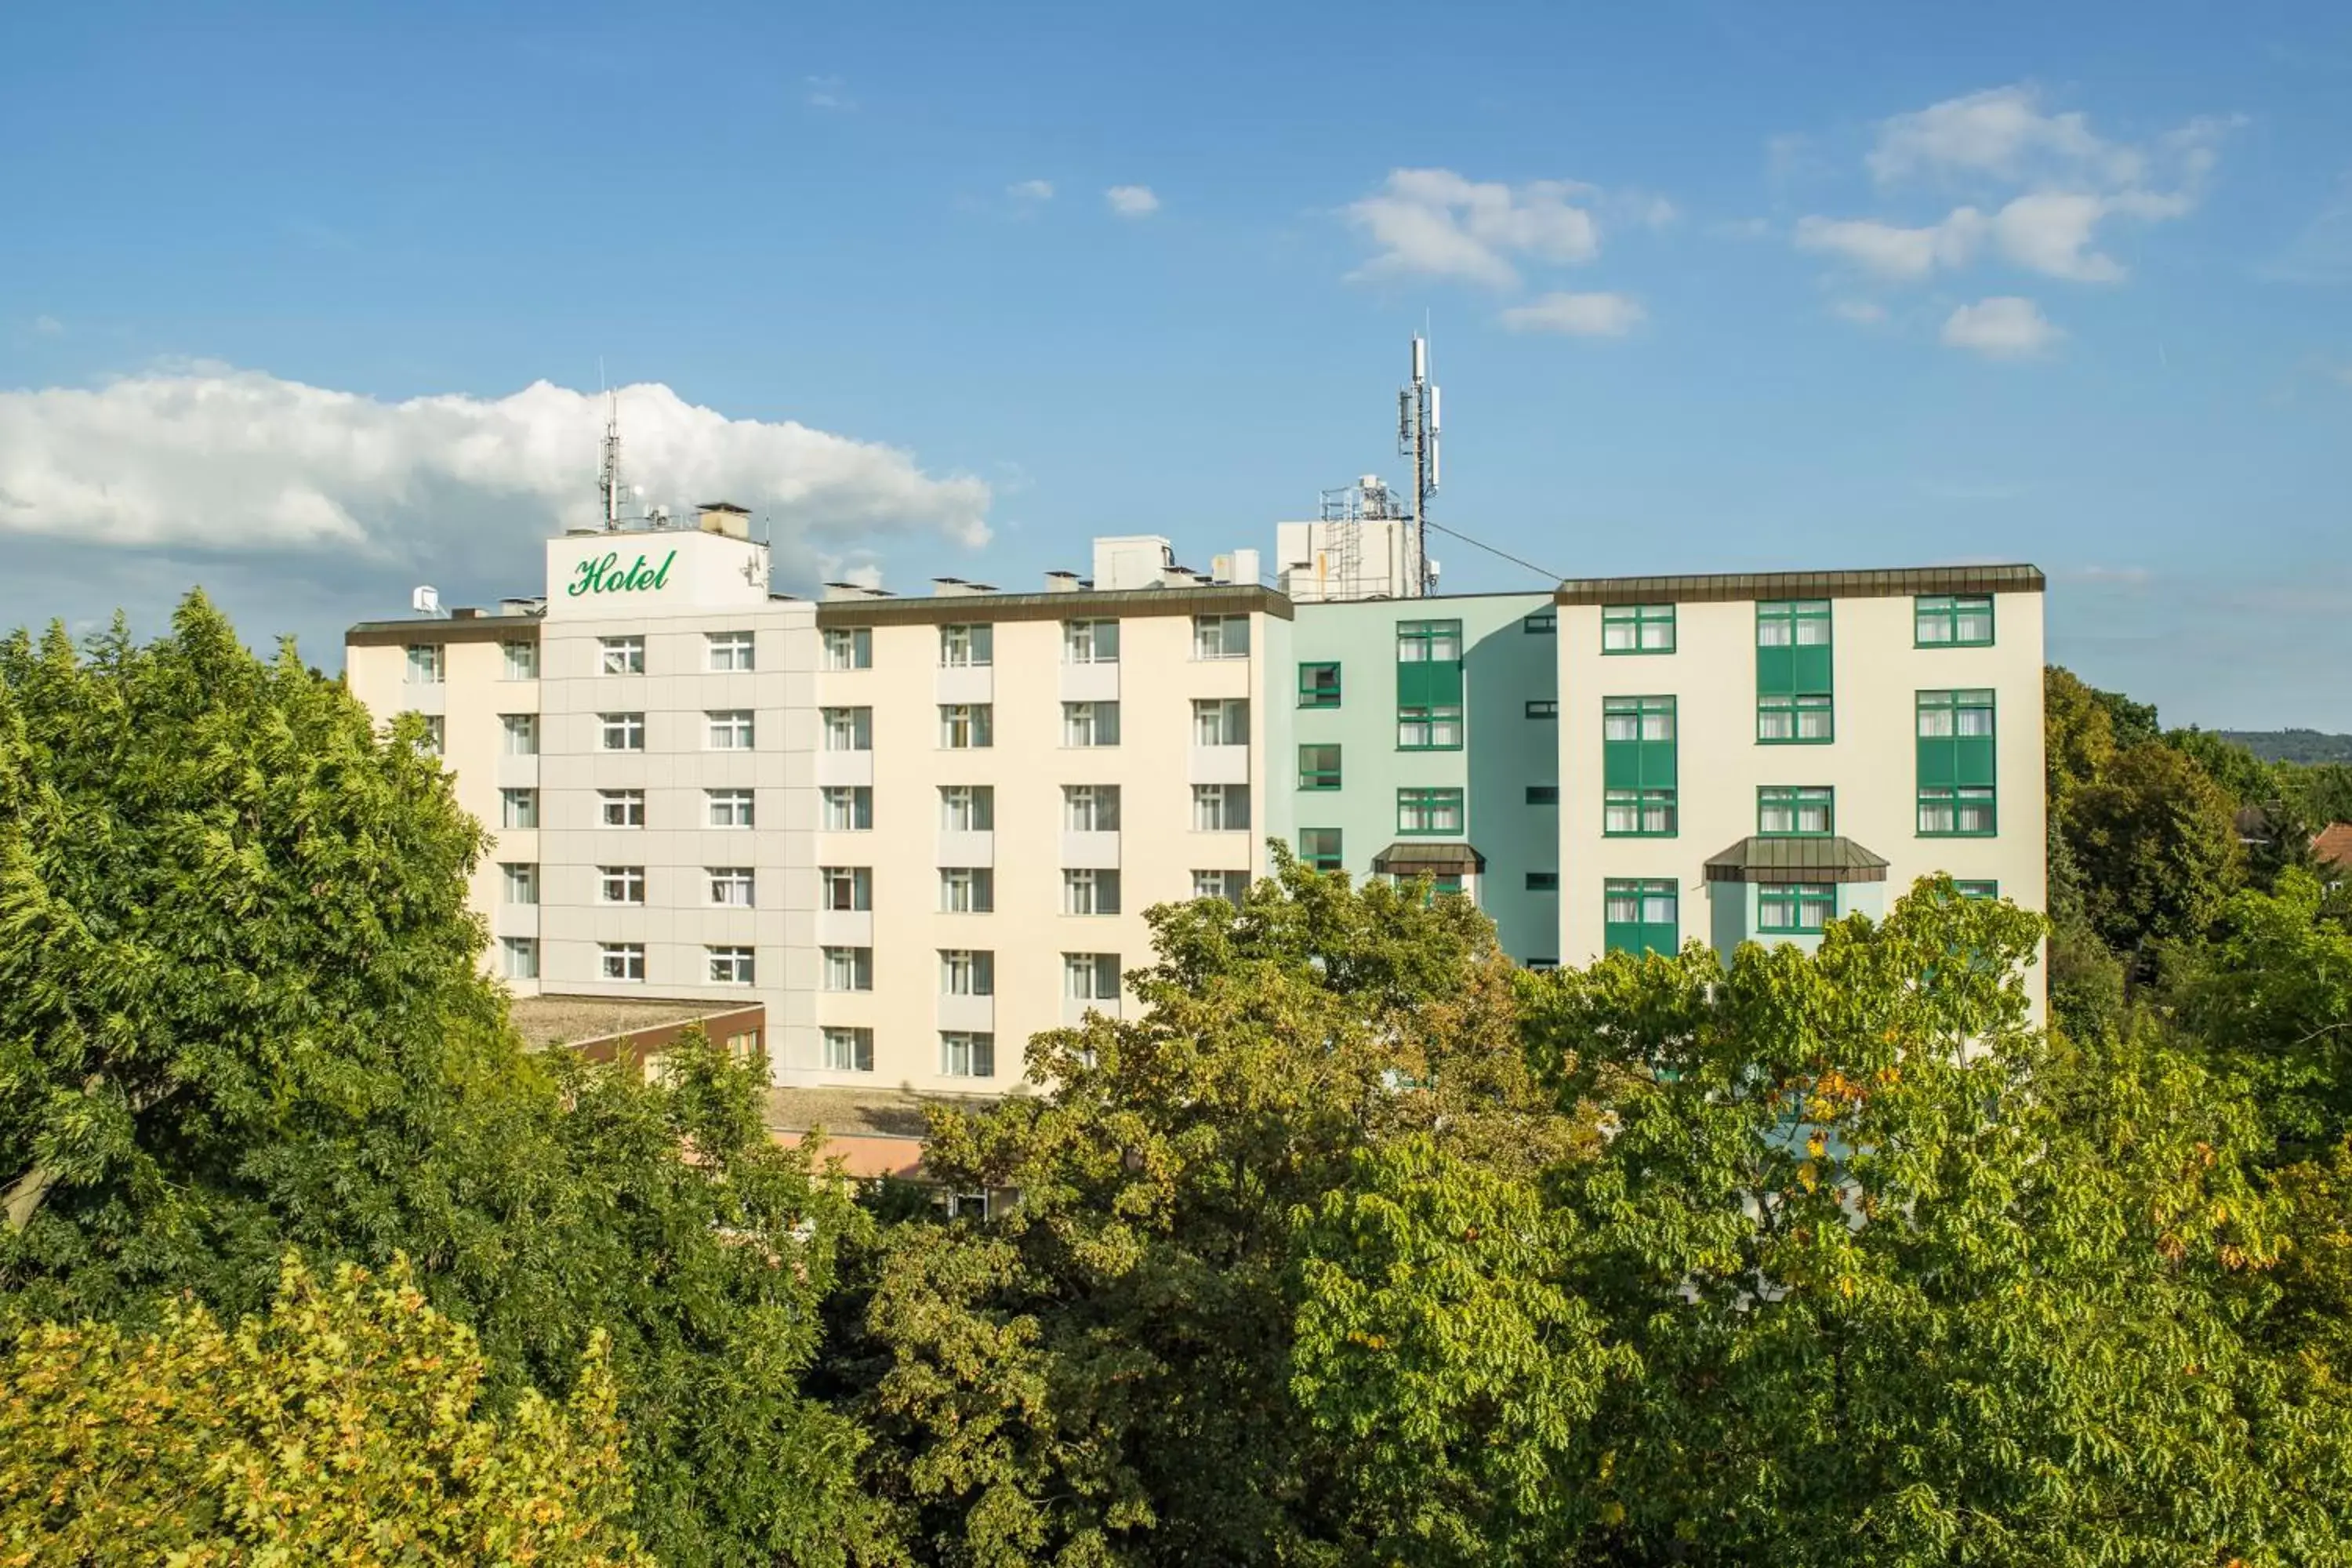 Bird's eye view, Property Building in Best Western Plus Hotel Steinsgarten